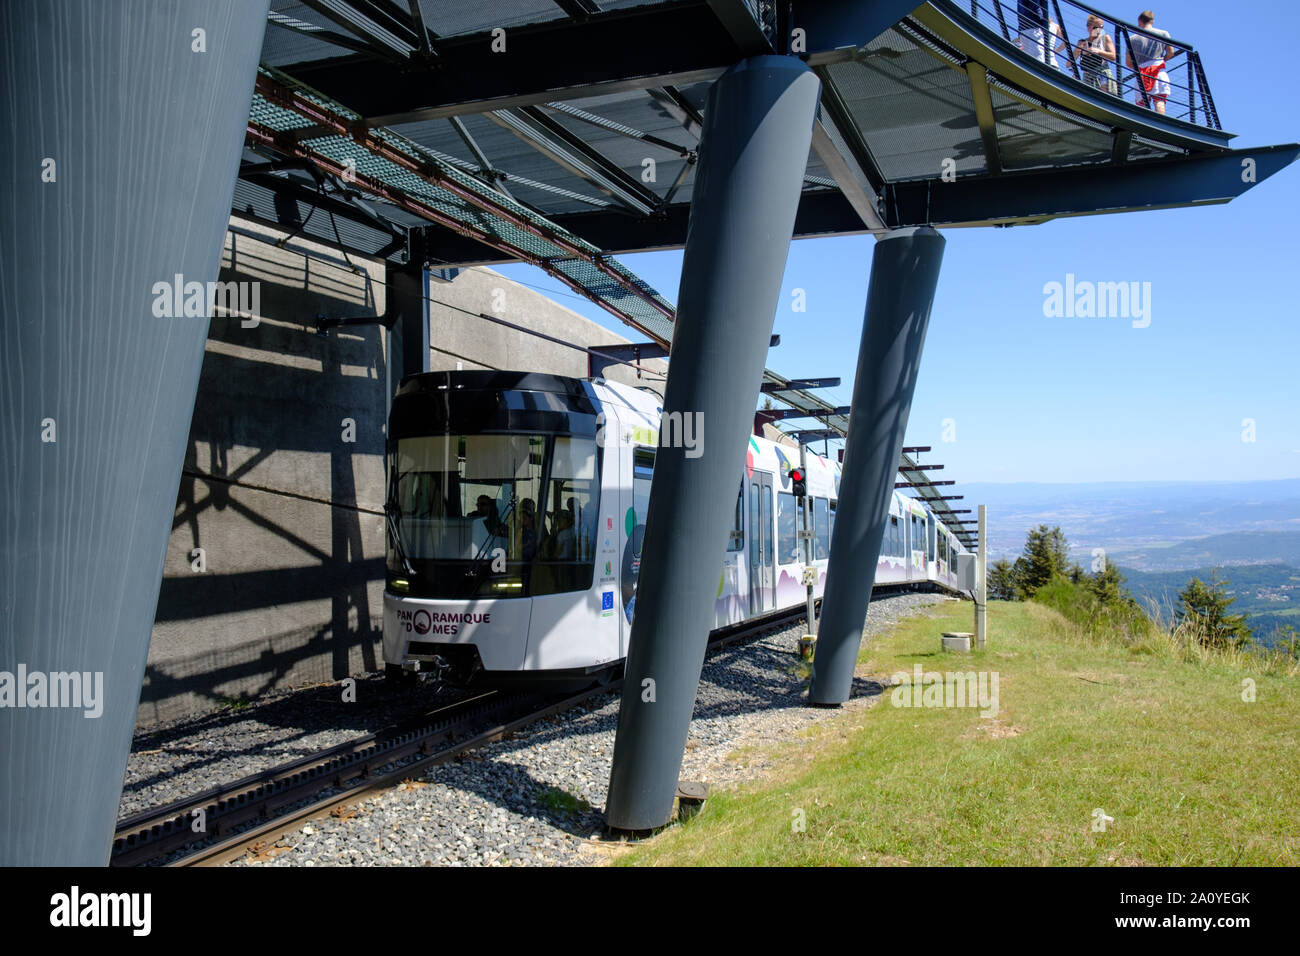 "Panaromique des Domes' panaromic treno elettrico arrivando alla sommità del Puy de Dome di Clermont Ferrand, Francia Foto Stock